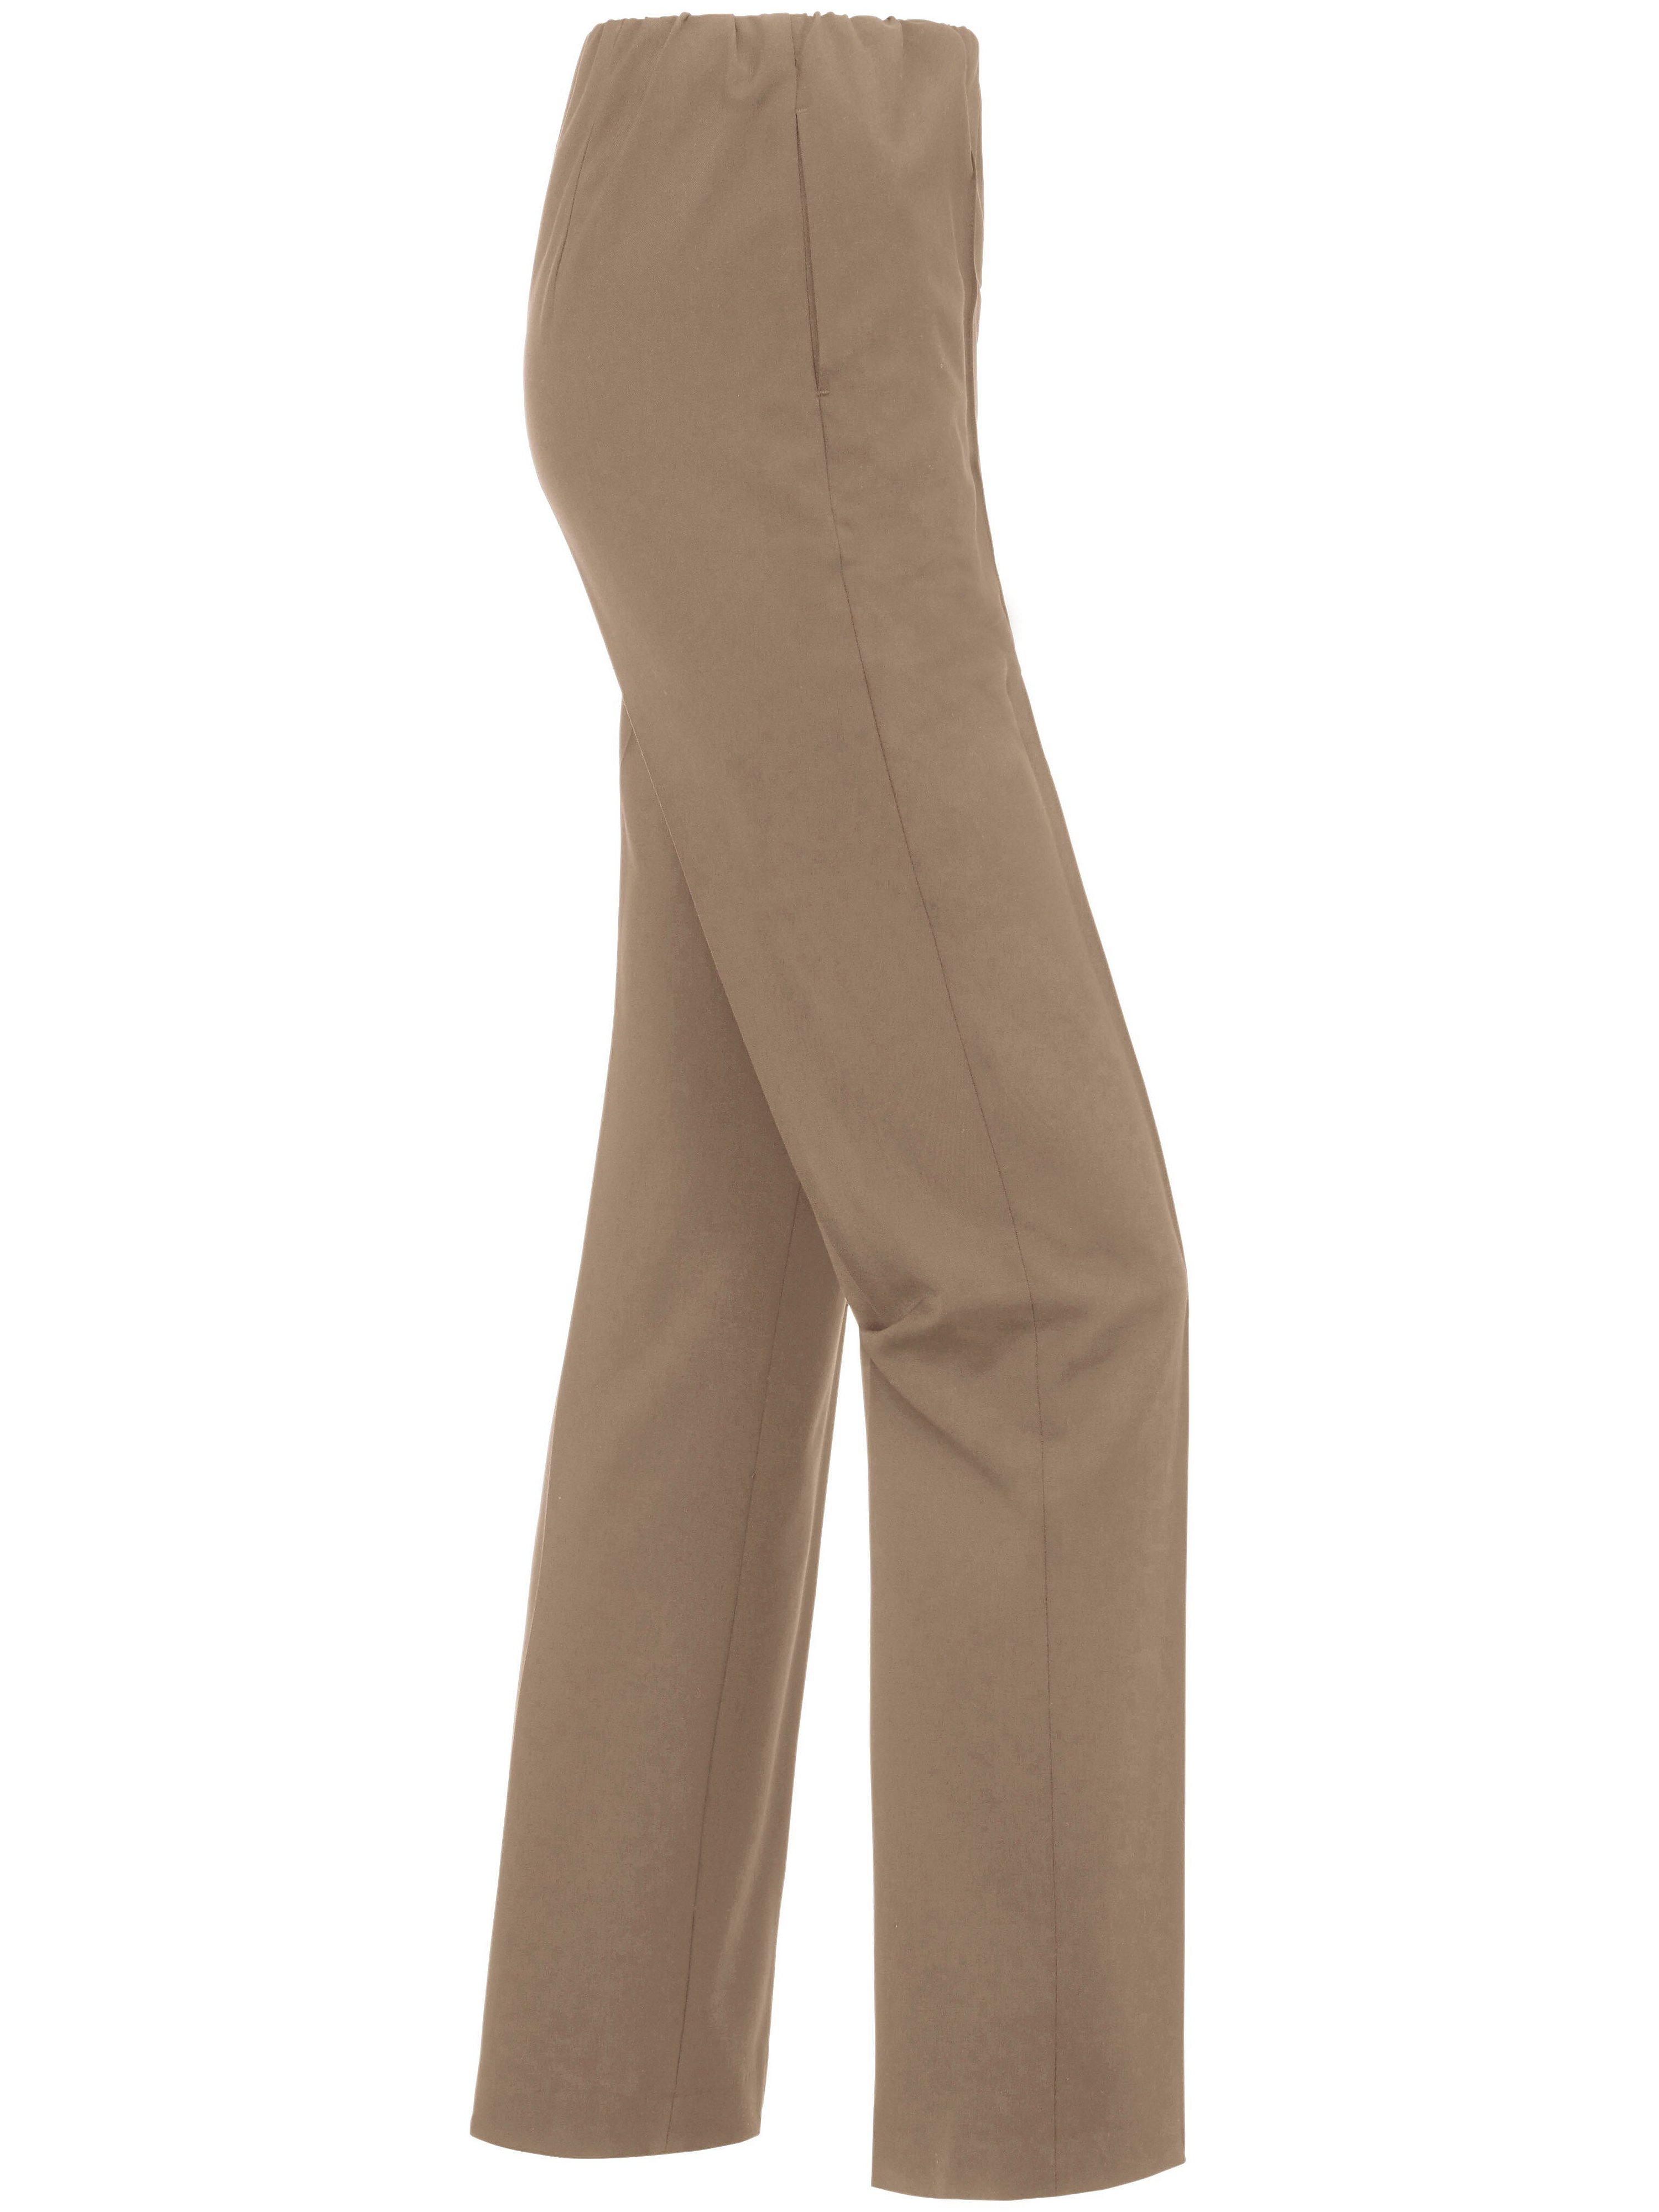 Bukser uden lukning, model PAULA Fra Raphaela by Brax brun